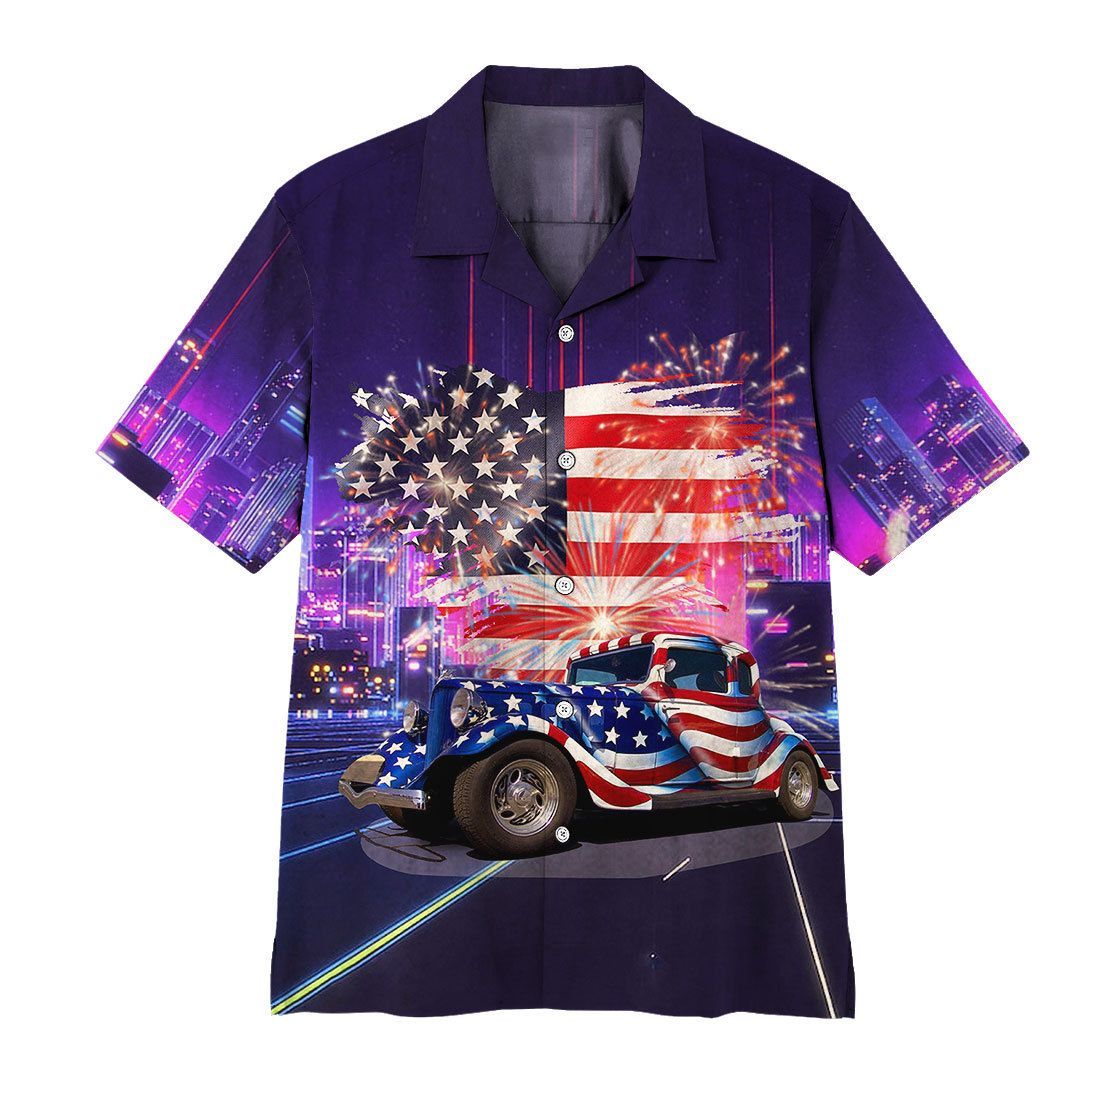 Gearhuman 3D American Flag Hot Rod Hawaii Shirt ZK2206213 Short Sleeve Shirt Short Sleeve Shirt S 